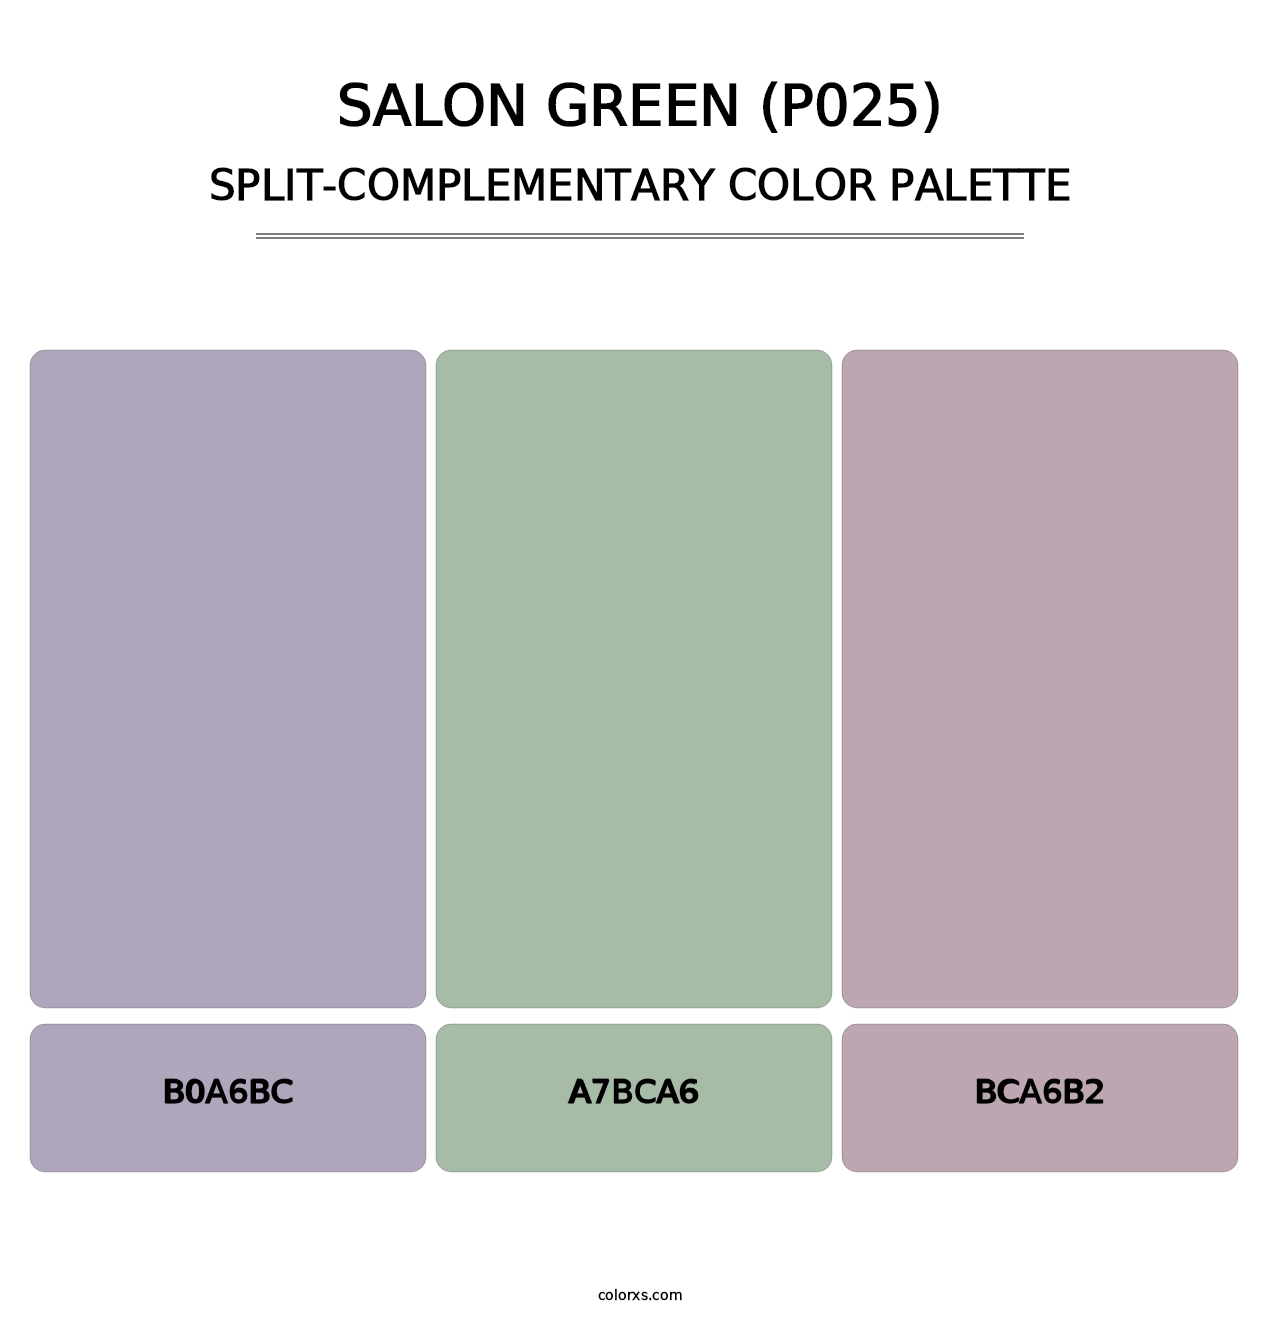 Salon Green (P025) - Split-Complementary Color Palette